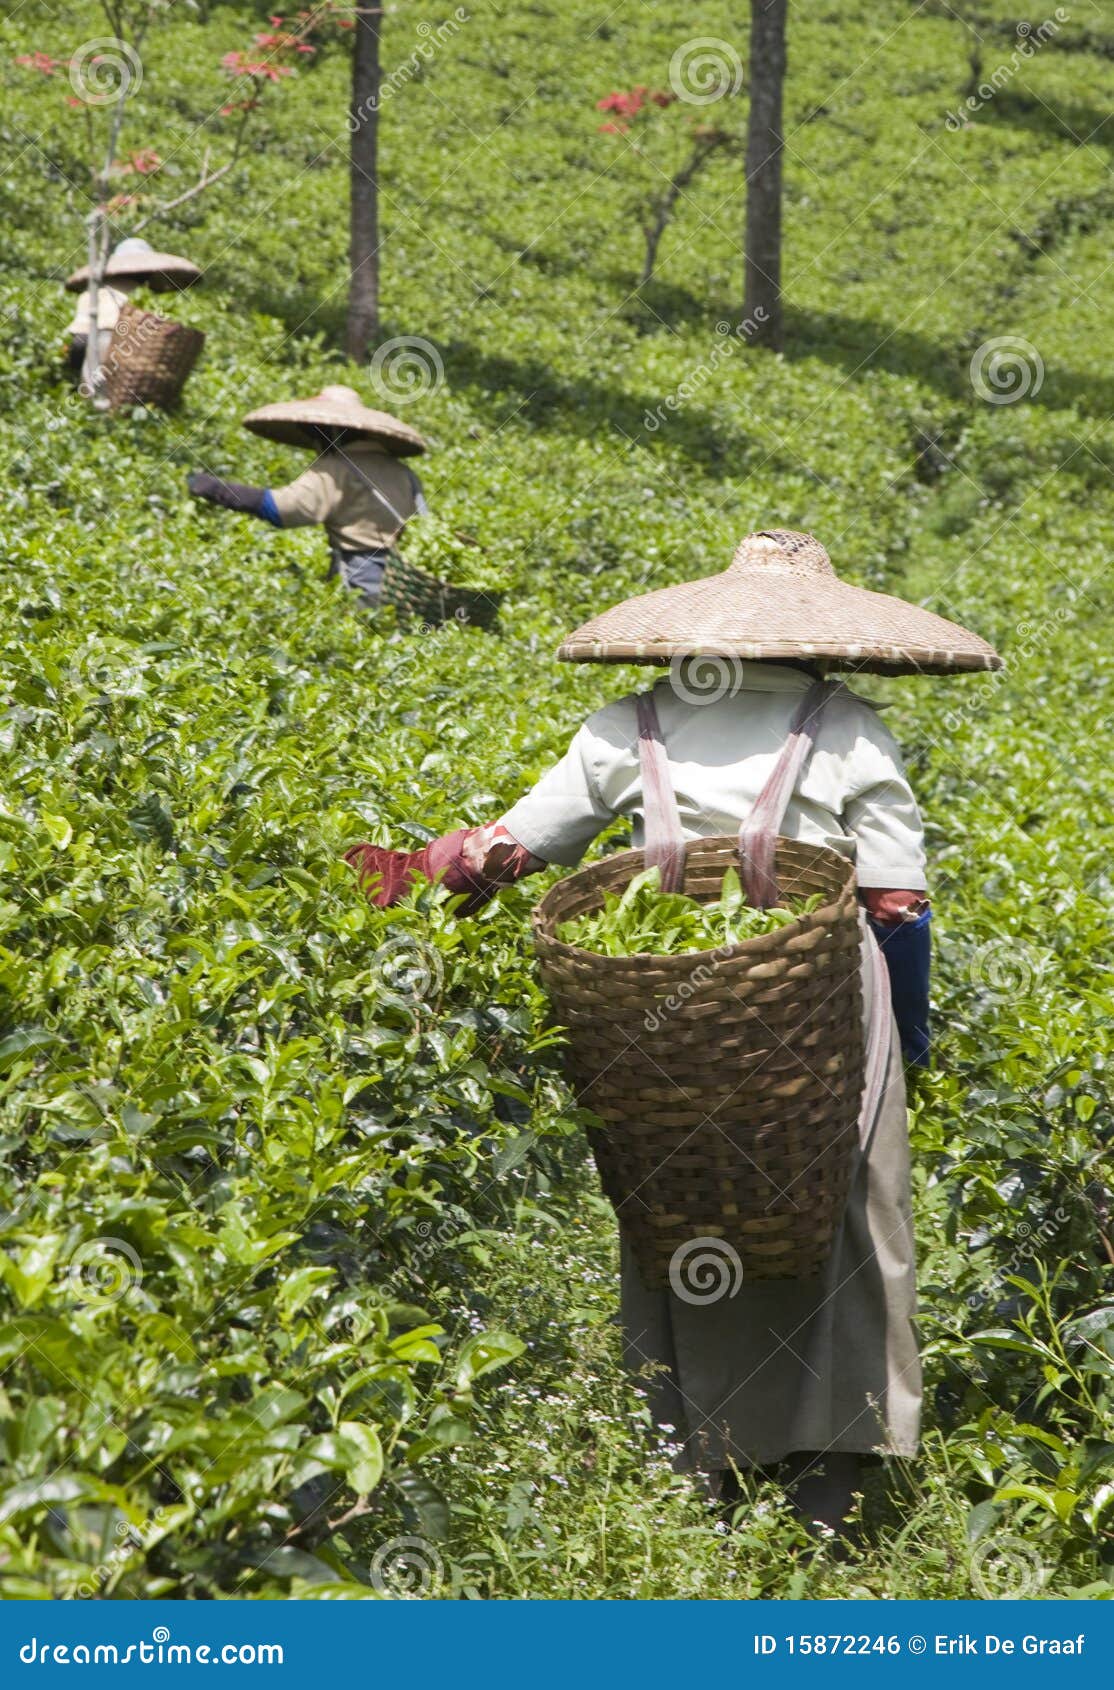 tea pickers